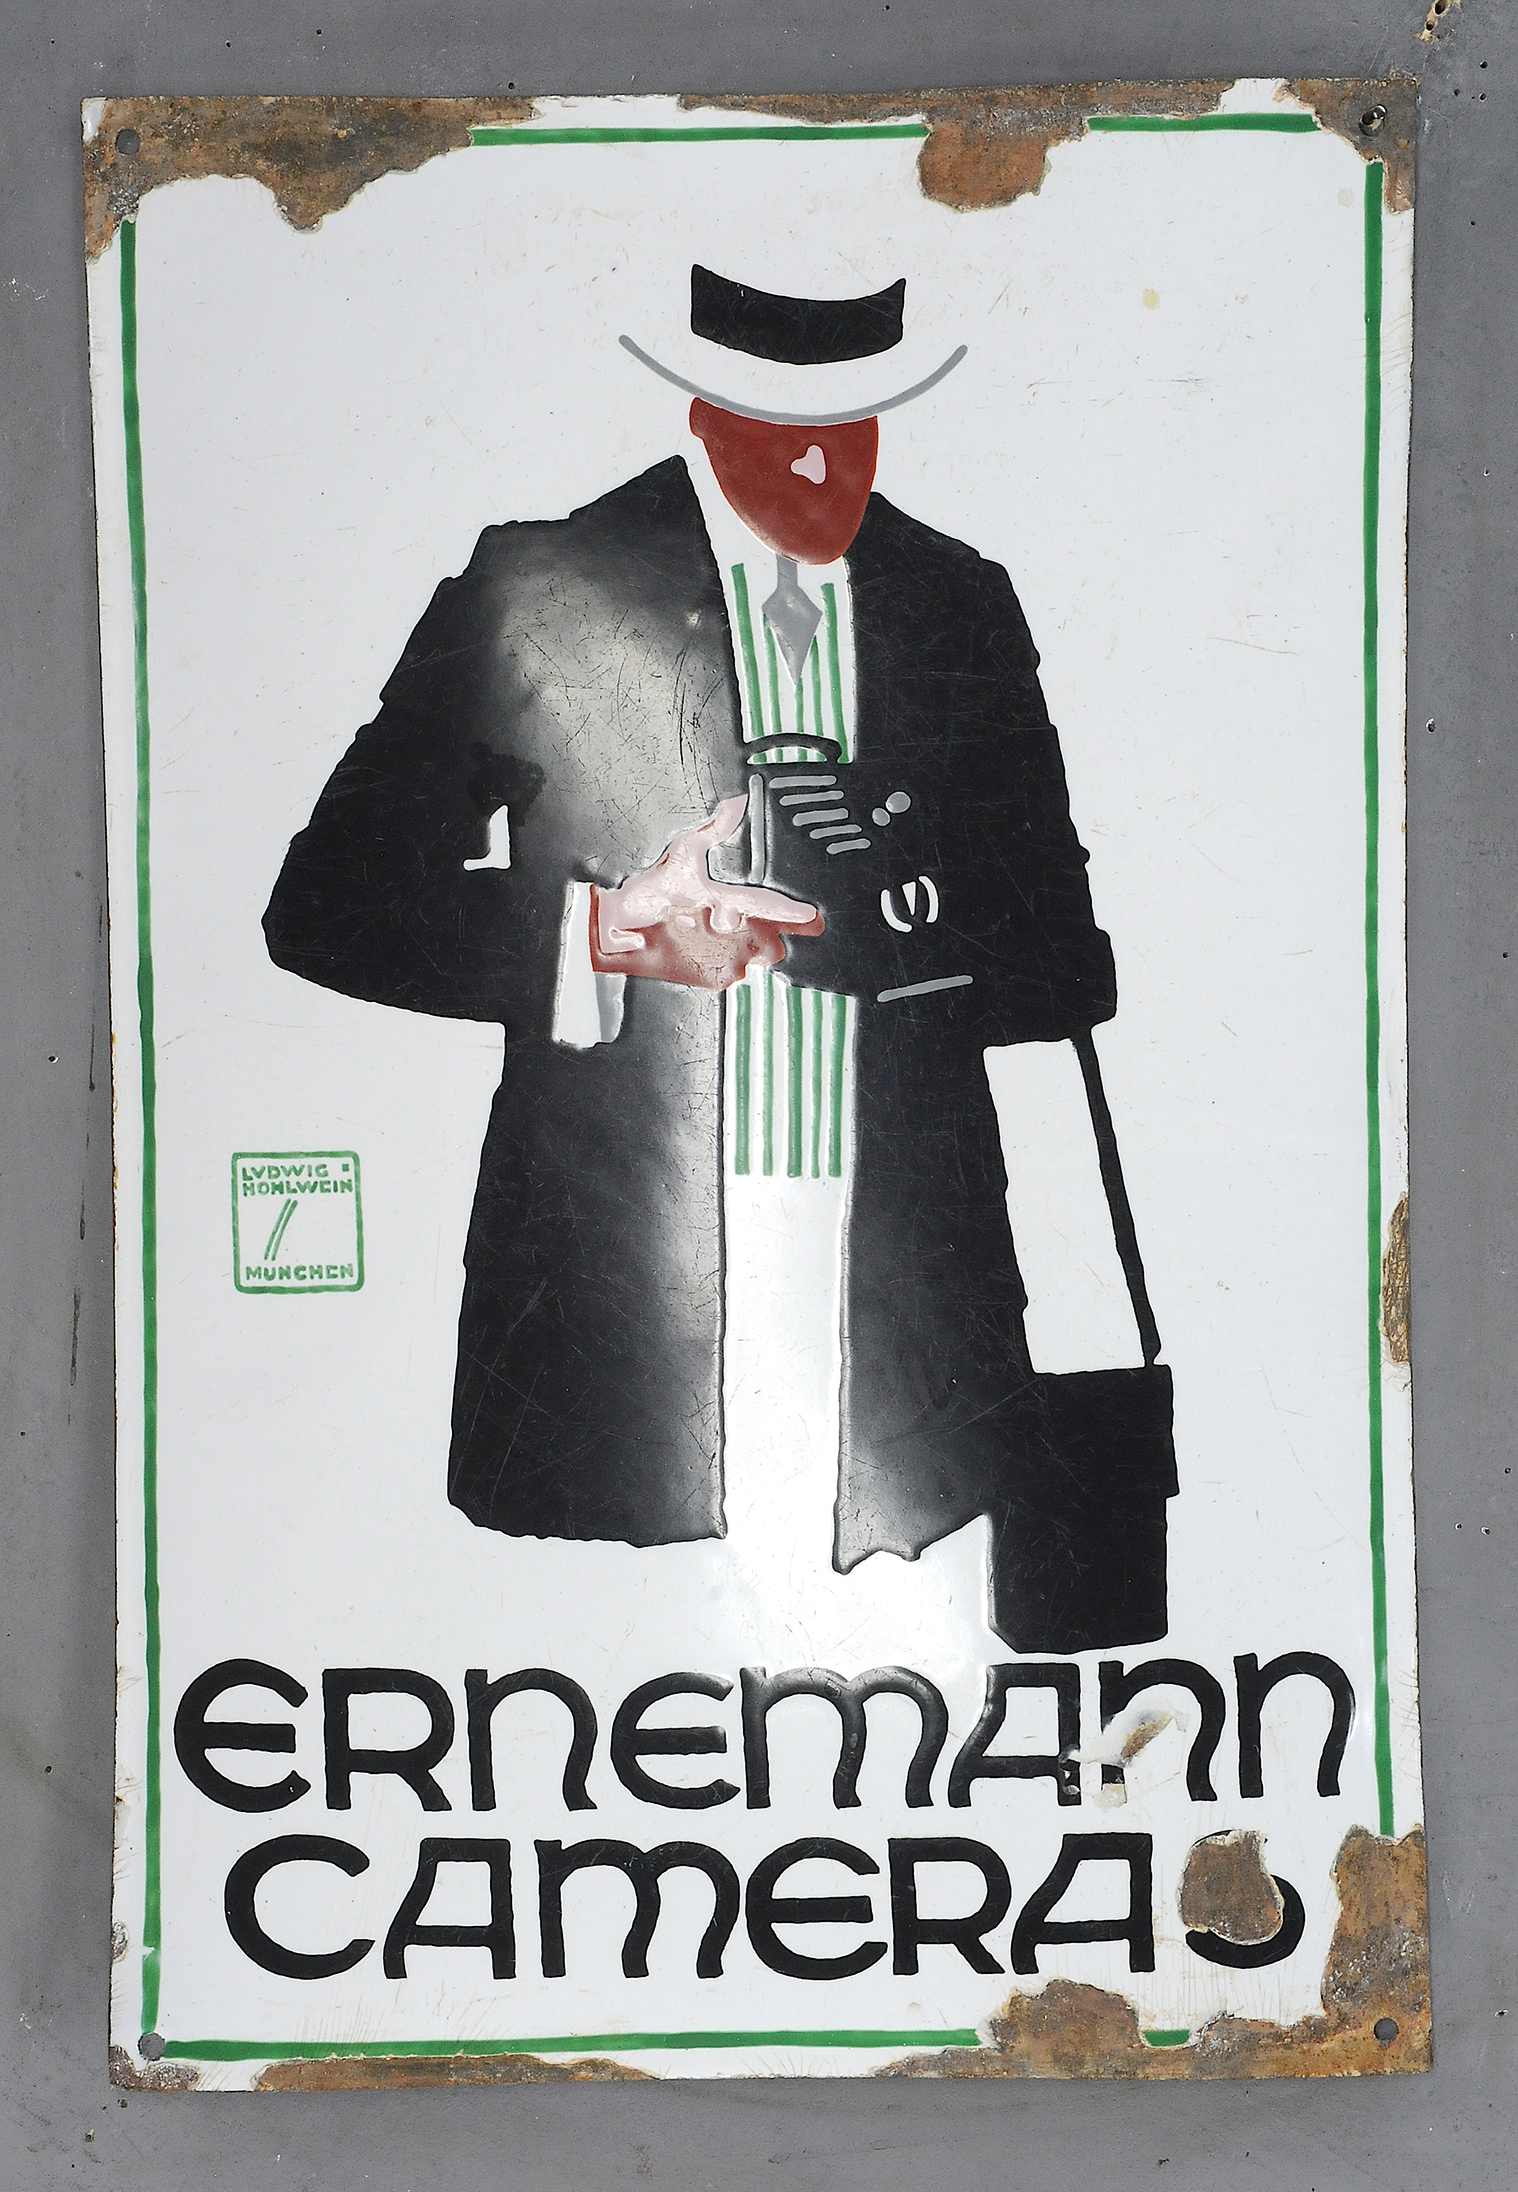 Ernemann Cameras - Image 3 of 3